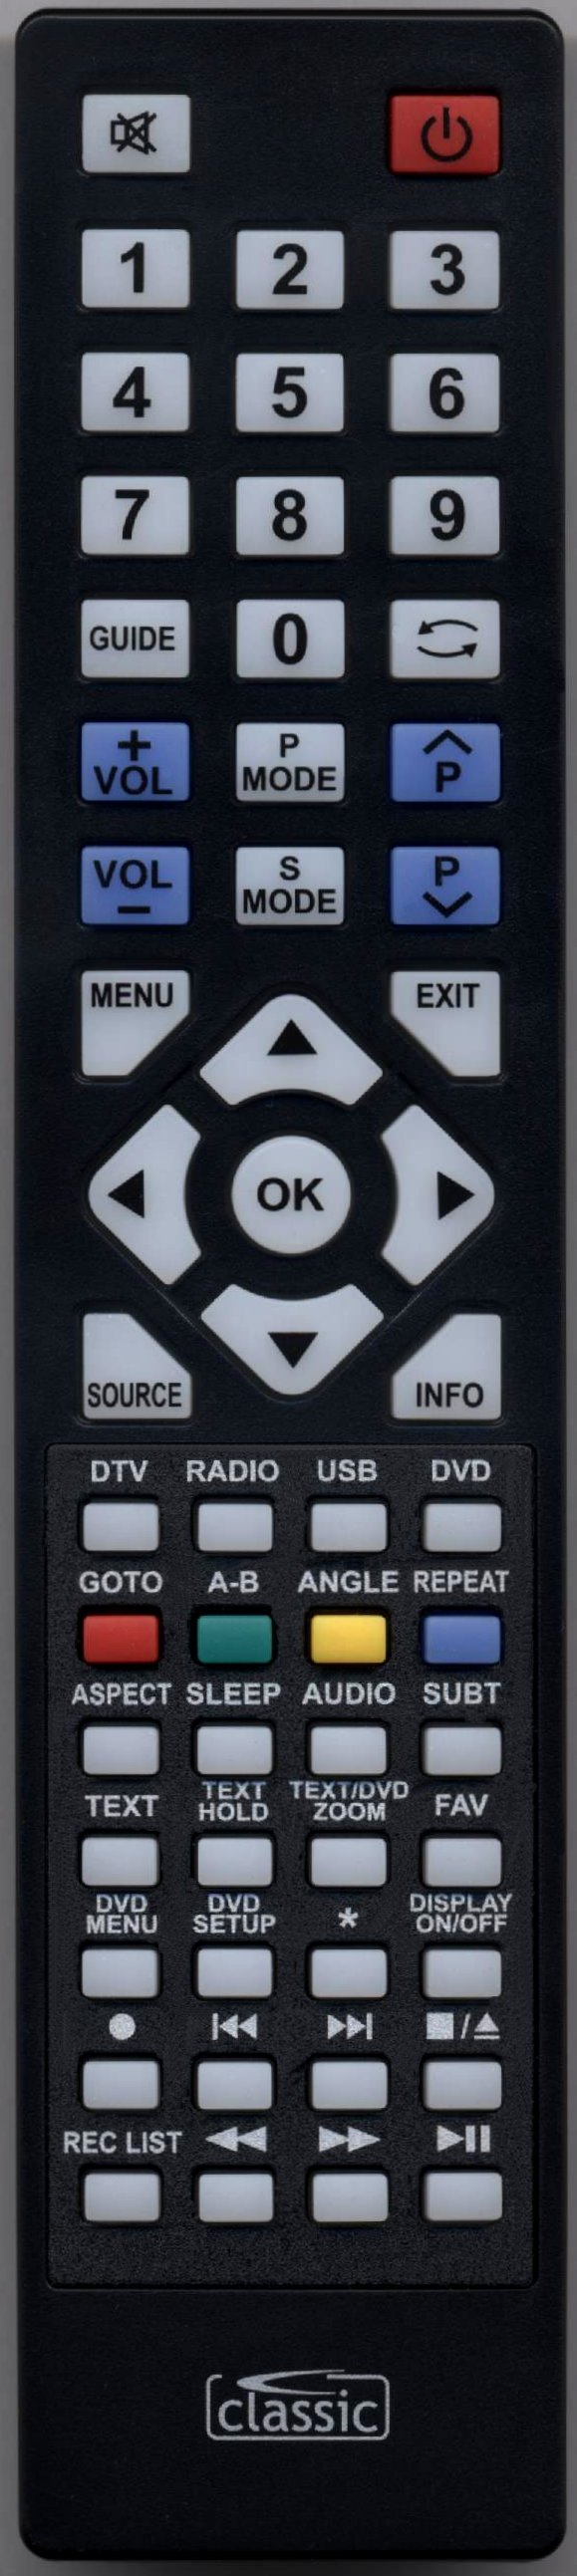 TECHNIKA 22E21B-FHD/DVD Remote Control Alternative